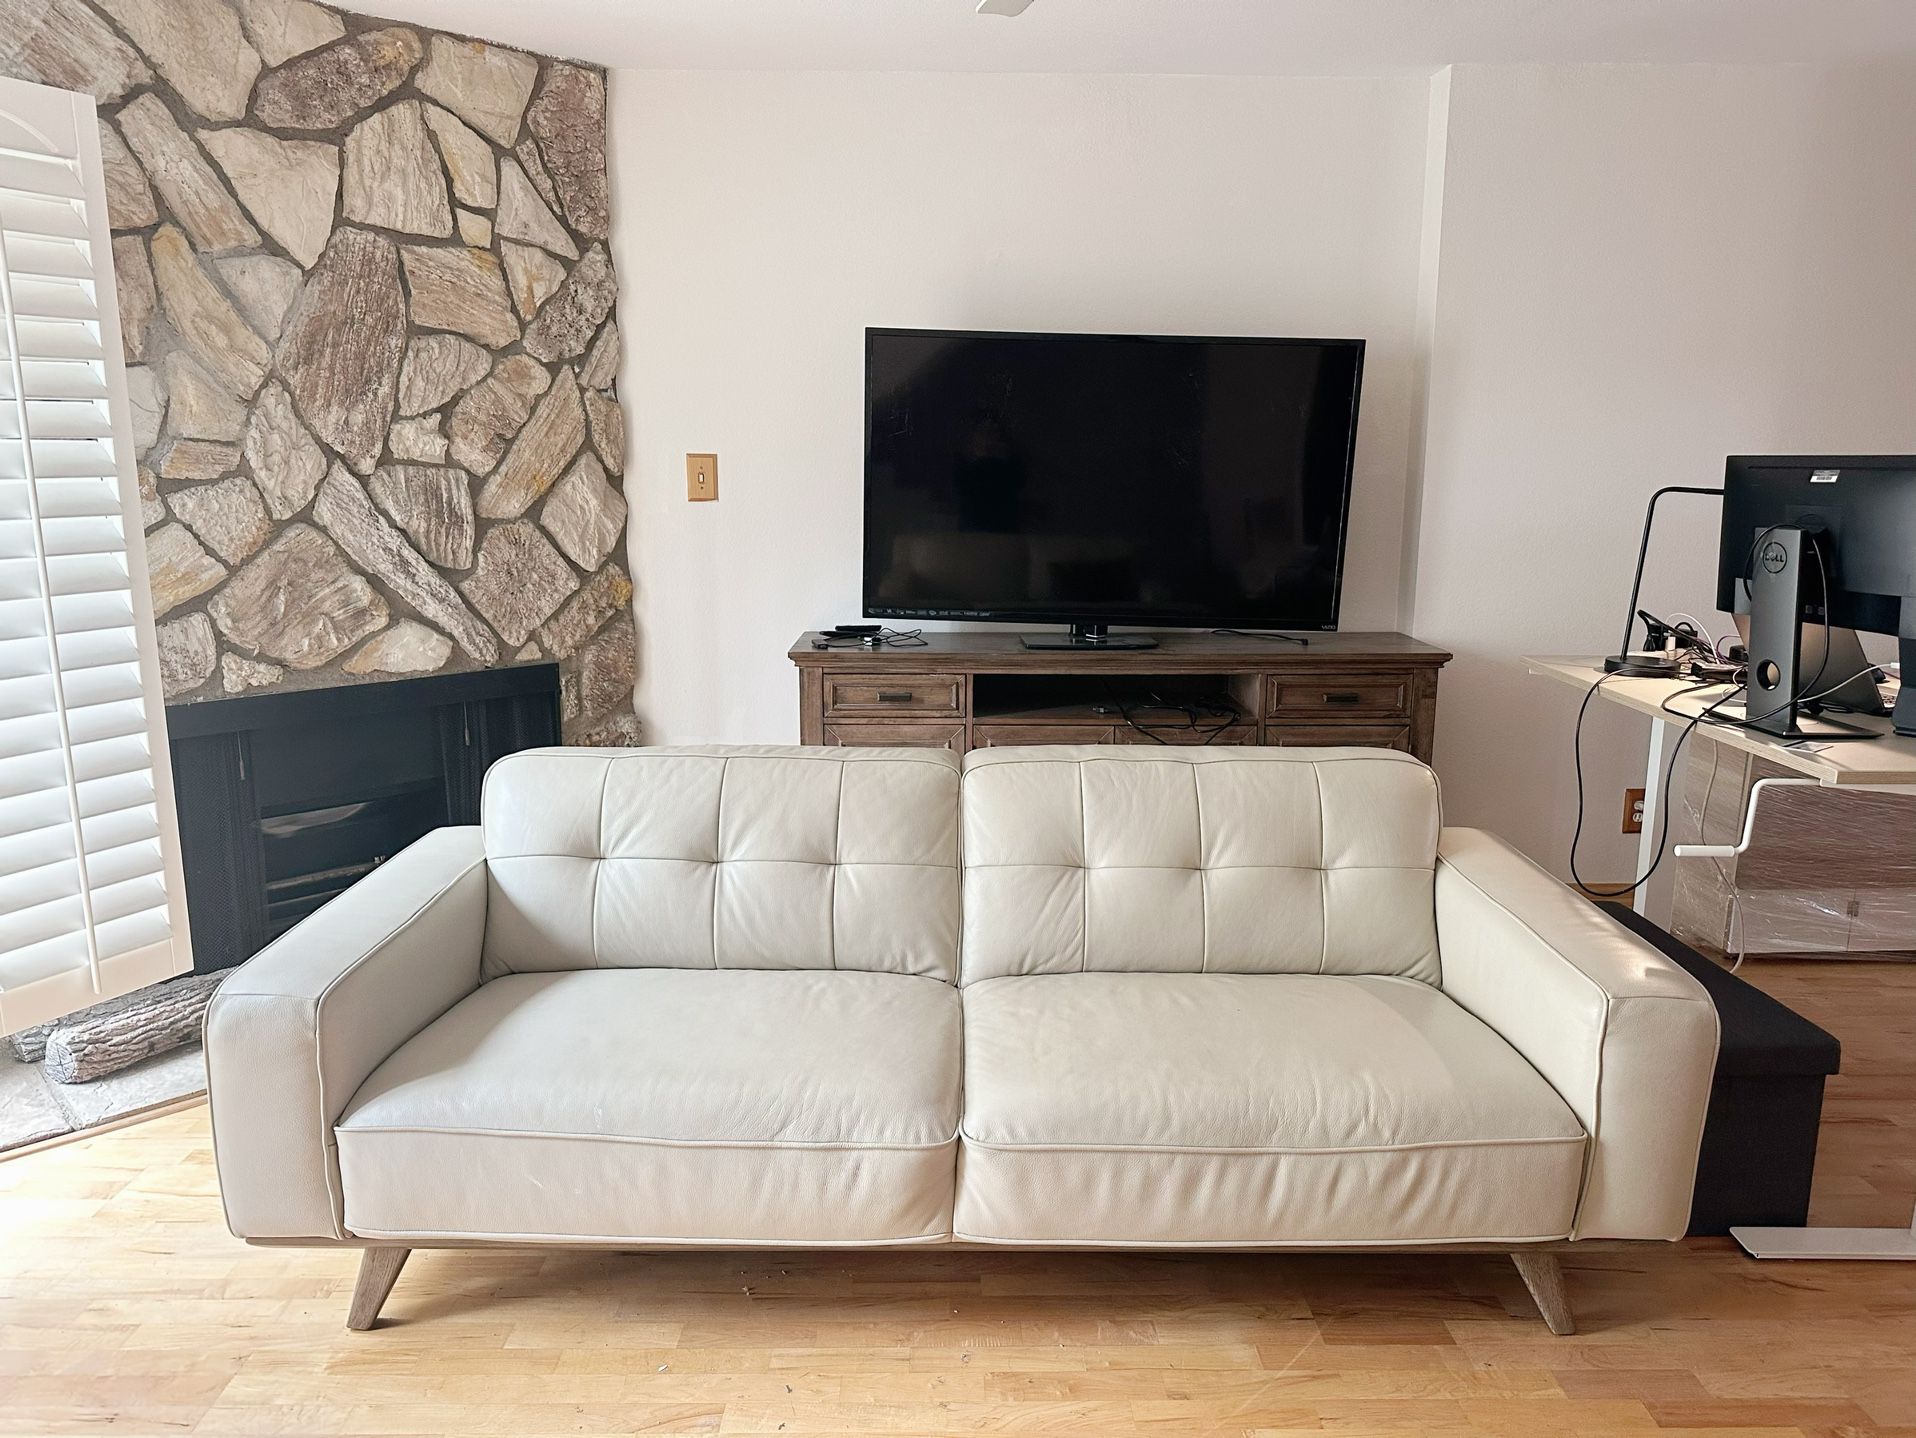 Beige Sofa, Premium Leather, Comfortable - $498